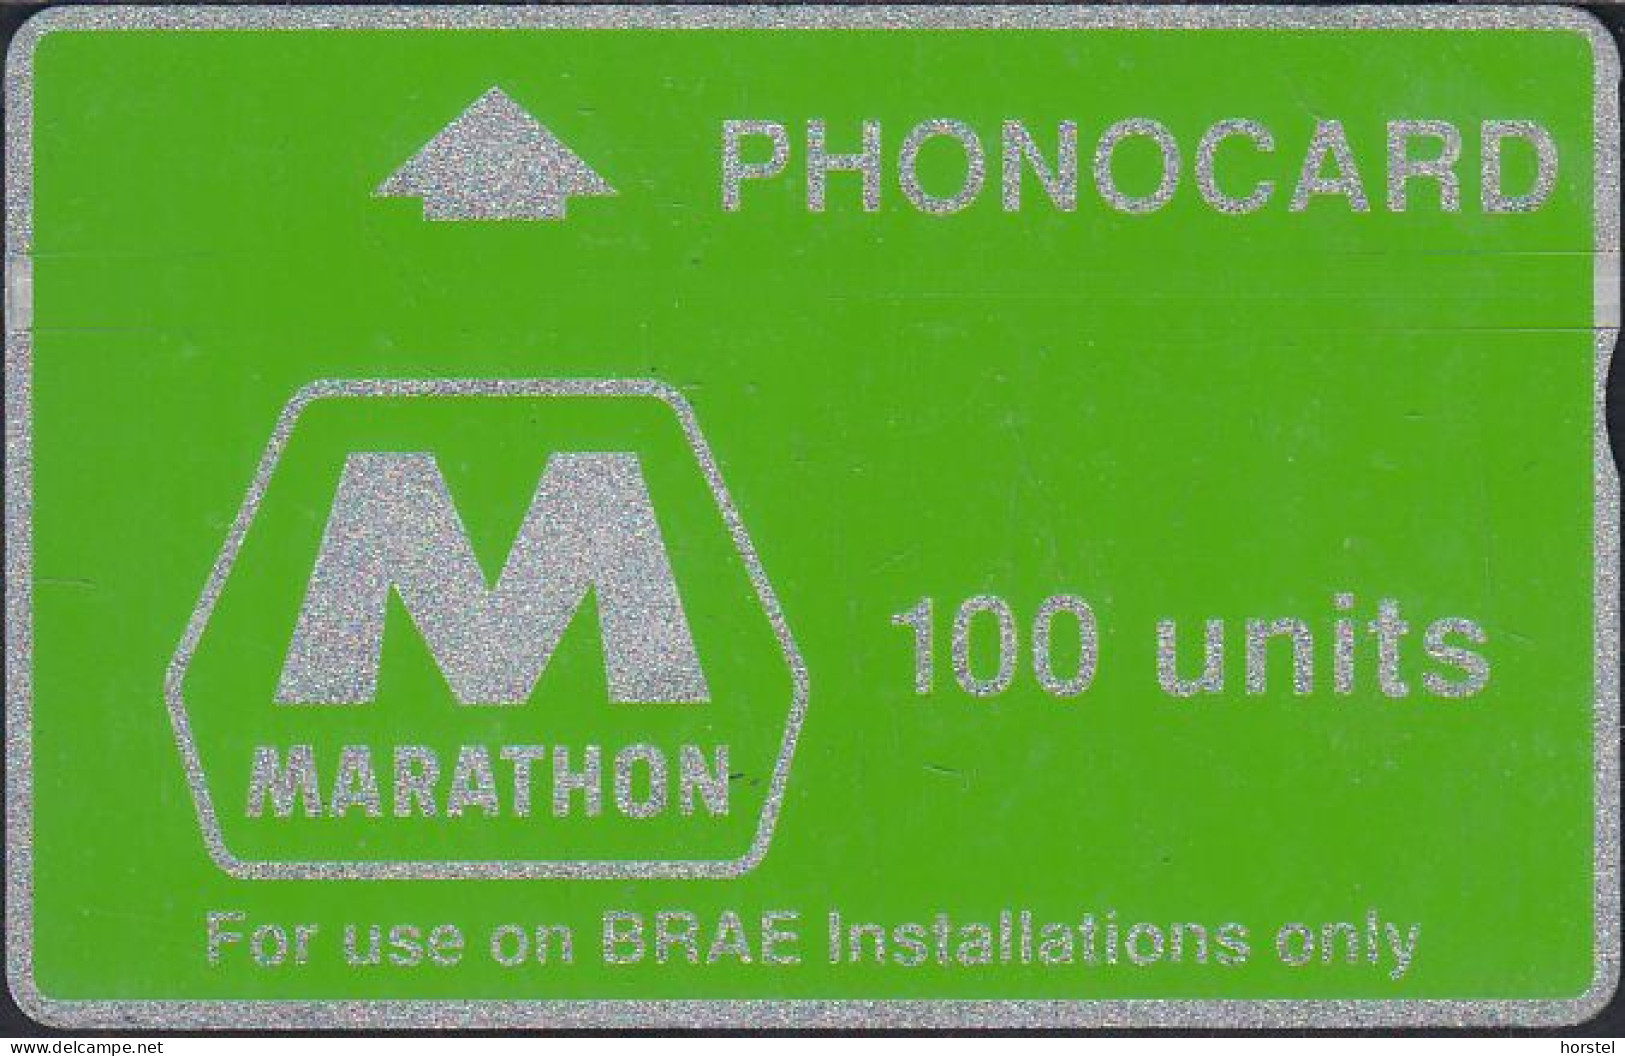 UK - CUR004B L&G Marathon PHONECARD Oil (Green Band - Notched) 100 Units - 148A - [ 2] Plataformas Petroleras